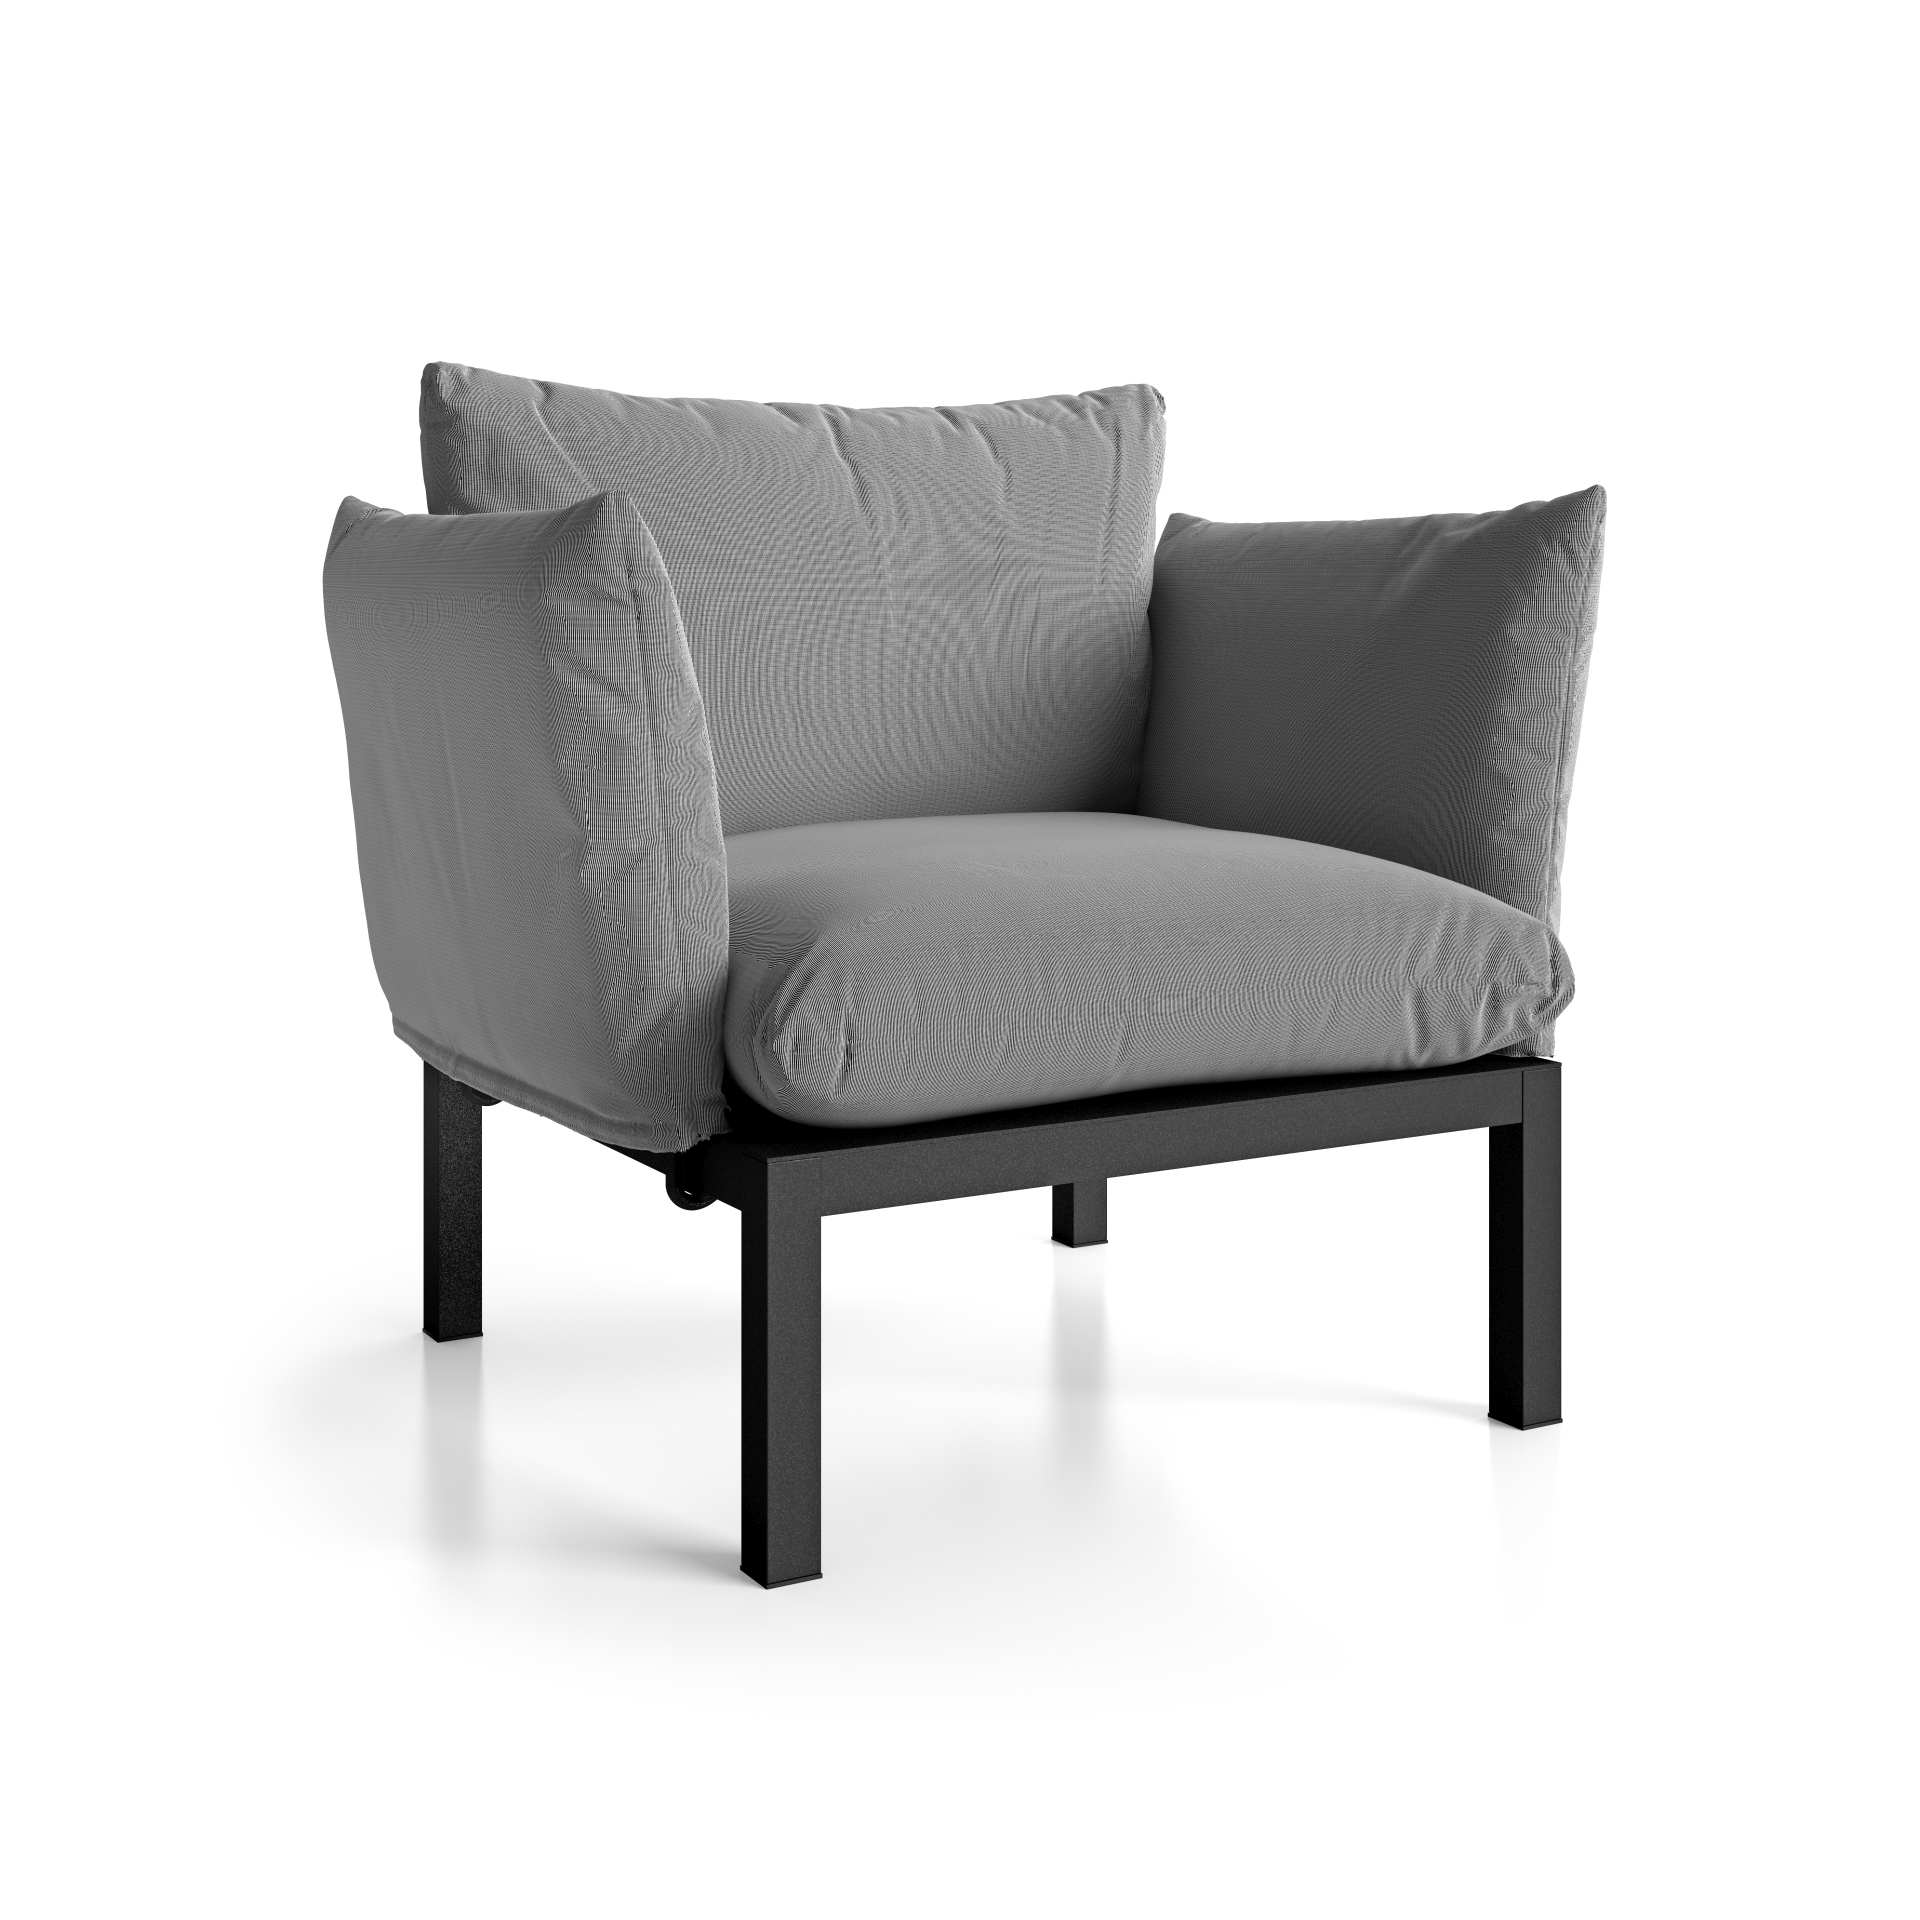 Die Sitzgruppe Domino bestehend aus einem 2-Sitzer Sofa und zwei Sesseln ist ein echter Hingucker für Deinen Garten. Gefertigt wurde sie von der Marke Jan Kurtz. Das Aluminium Gestell hat die Farbe Weiß und der Bezug hat die Farbe Weiß.